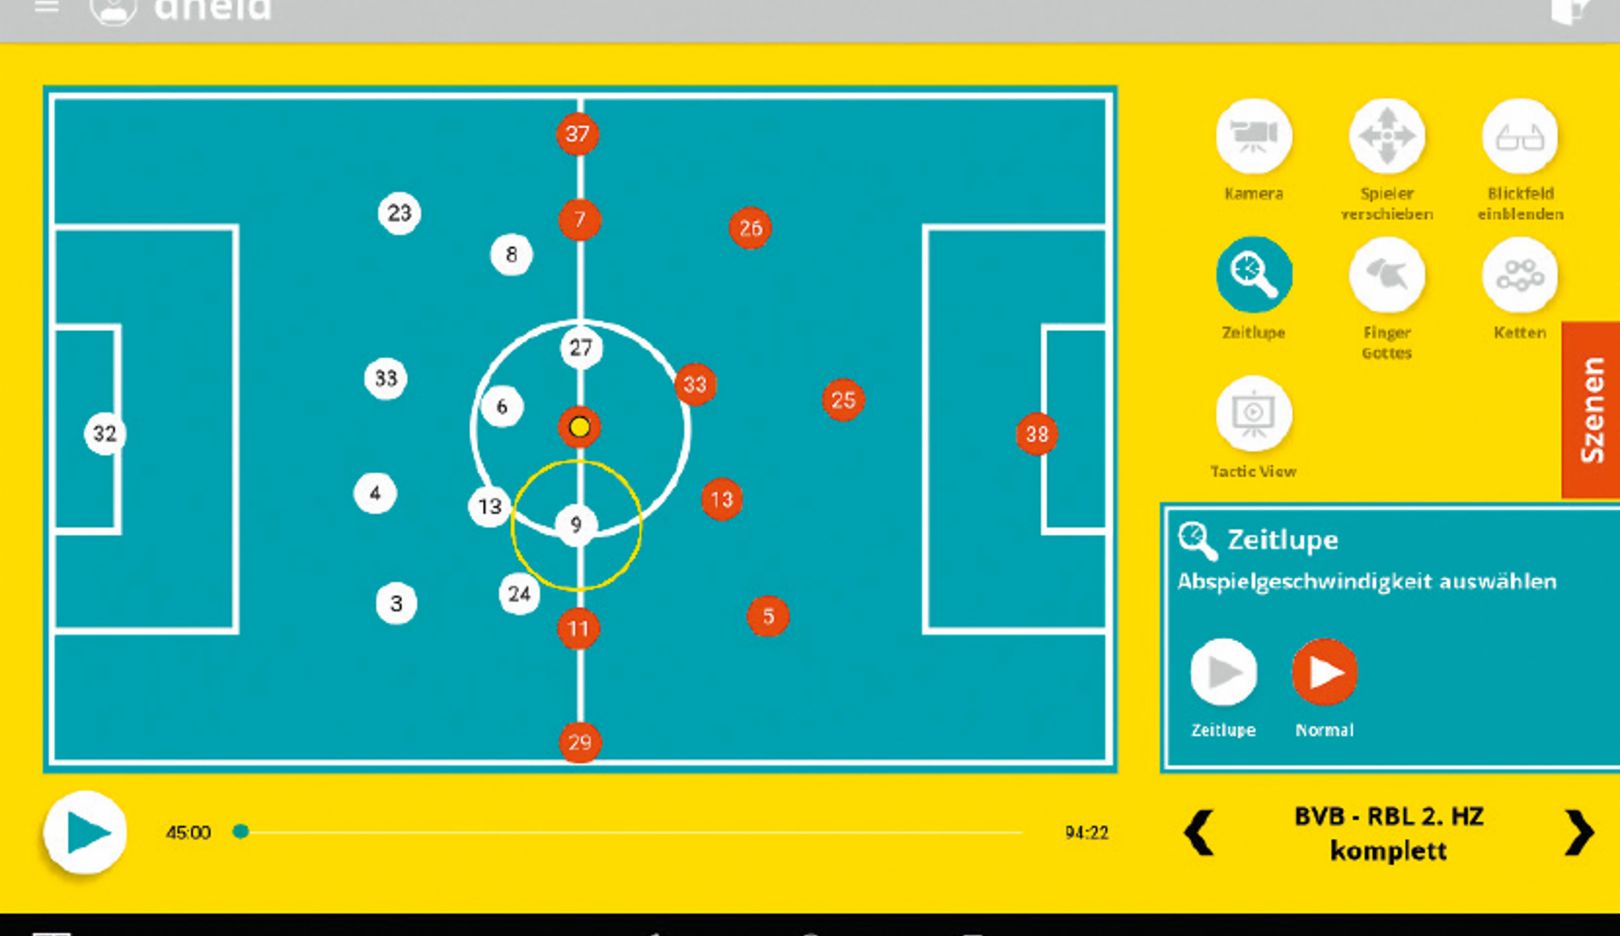 Przygotowanie do zmierzenia się z przeciwnikiem: Soccerbot360 umożliwia symulację różnych systemów gry. W ten sposób gracz uczy się odpowiednio reagować.